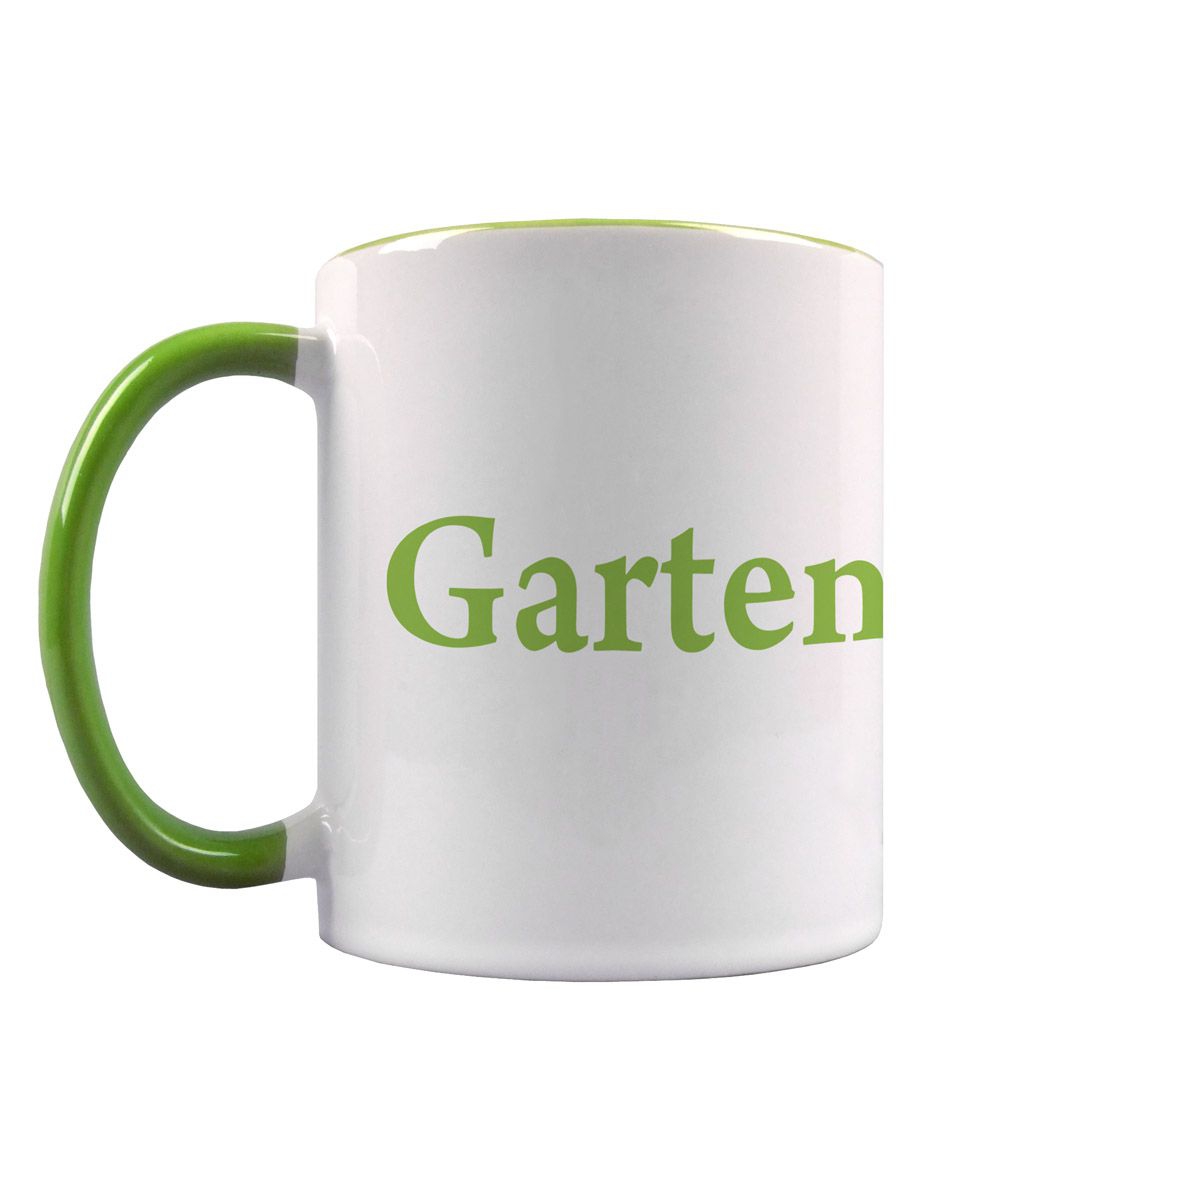 Gartengott Tasse hellgrün / weiß